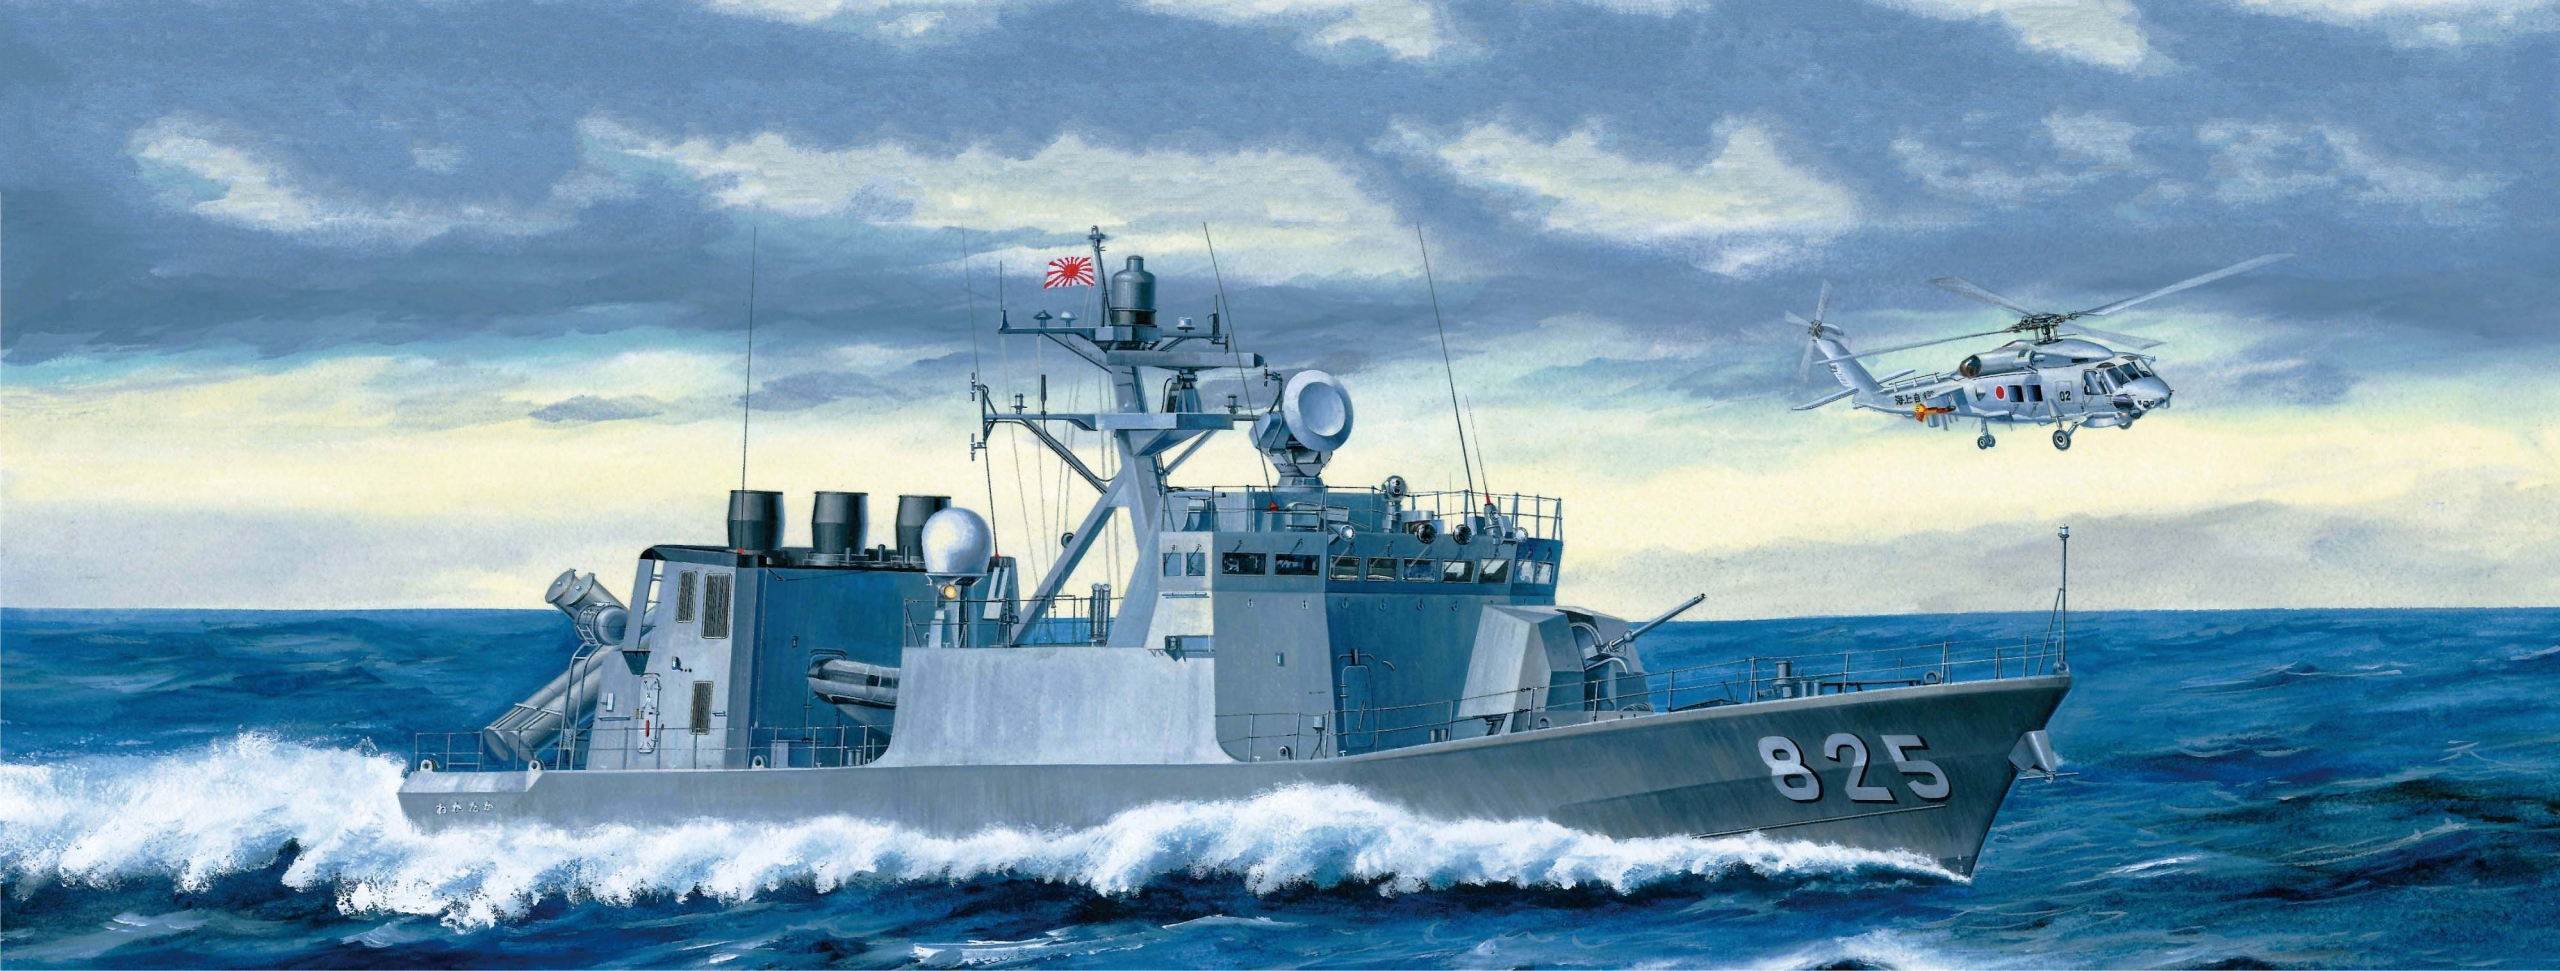 рисунок JMSDF Missile Craft Wakataka/Kumataka